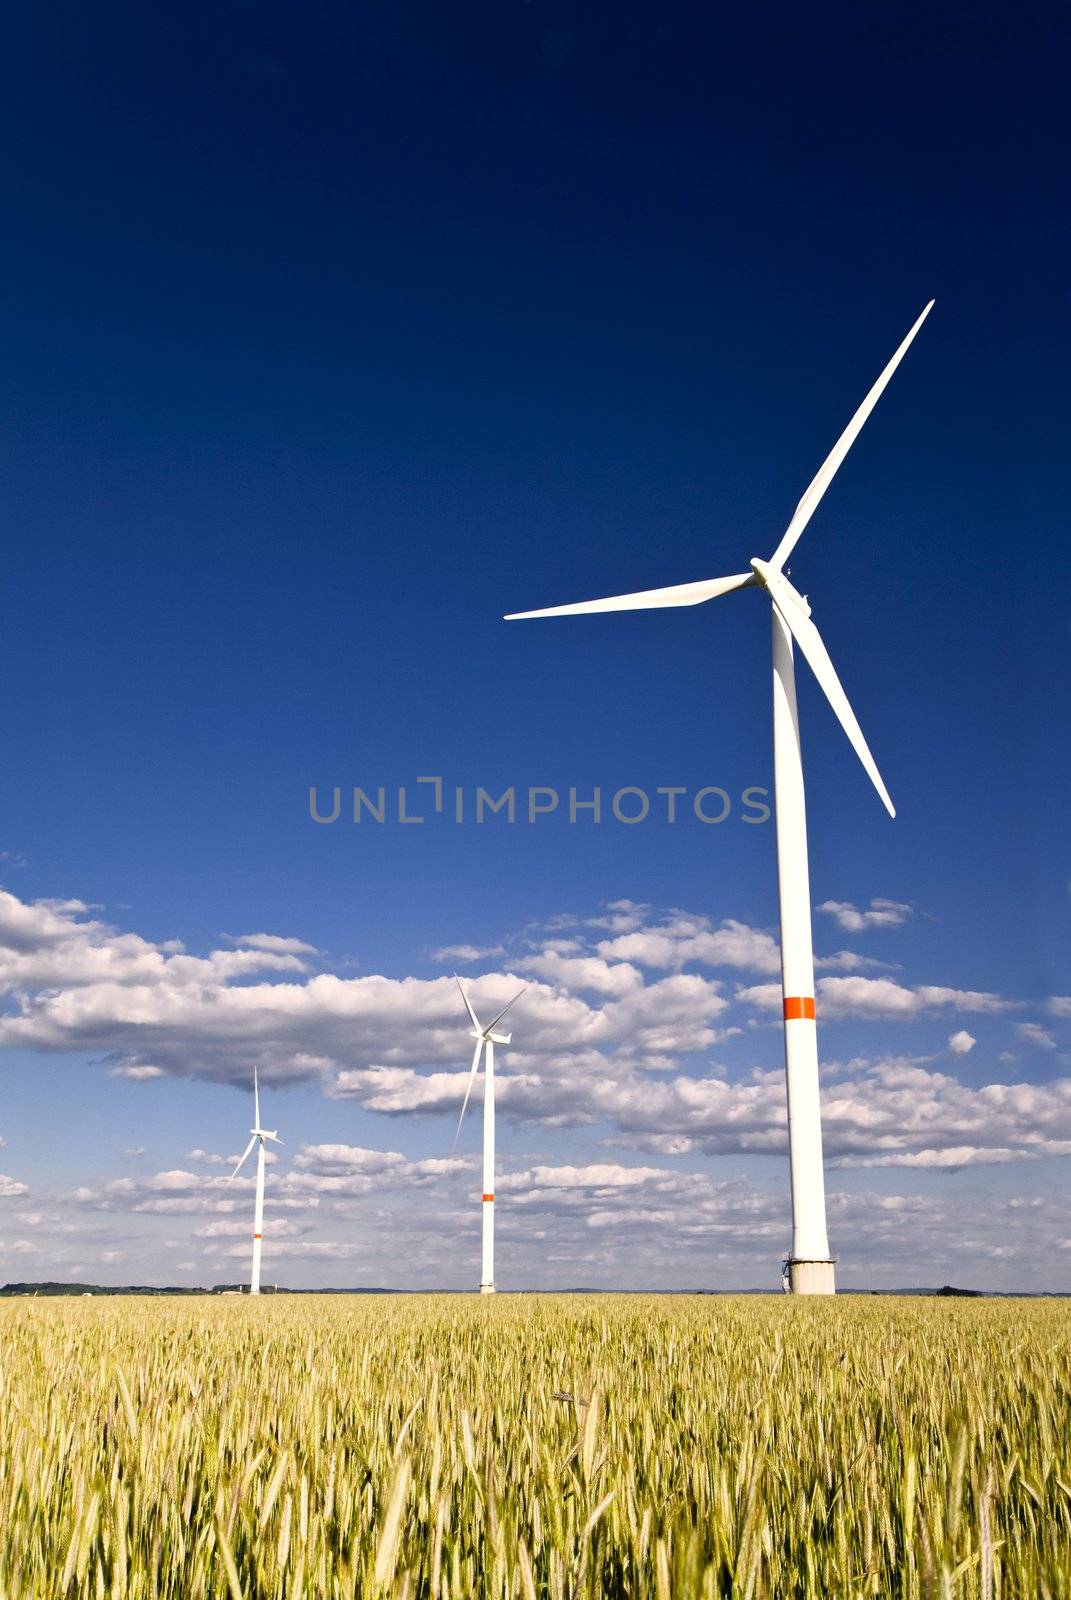 Windmills in a field of rye by Gbuglok